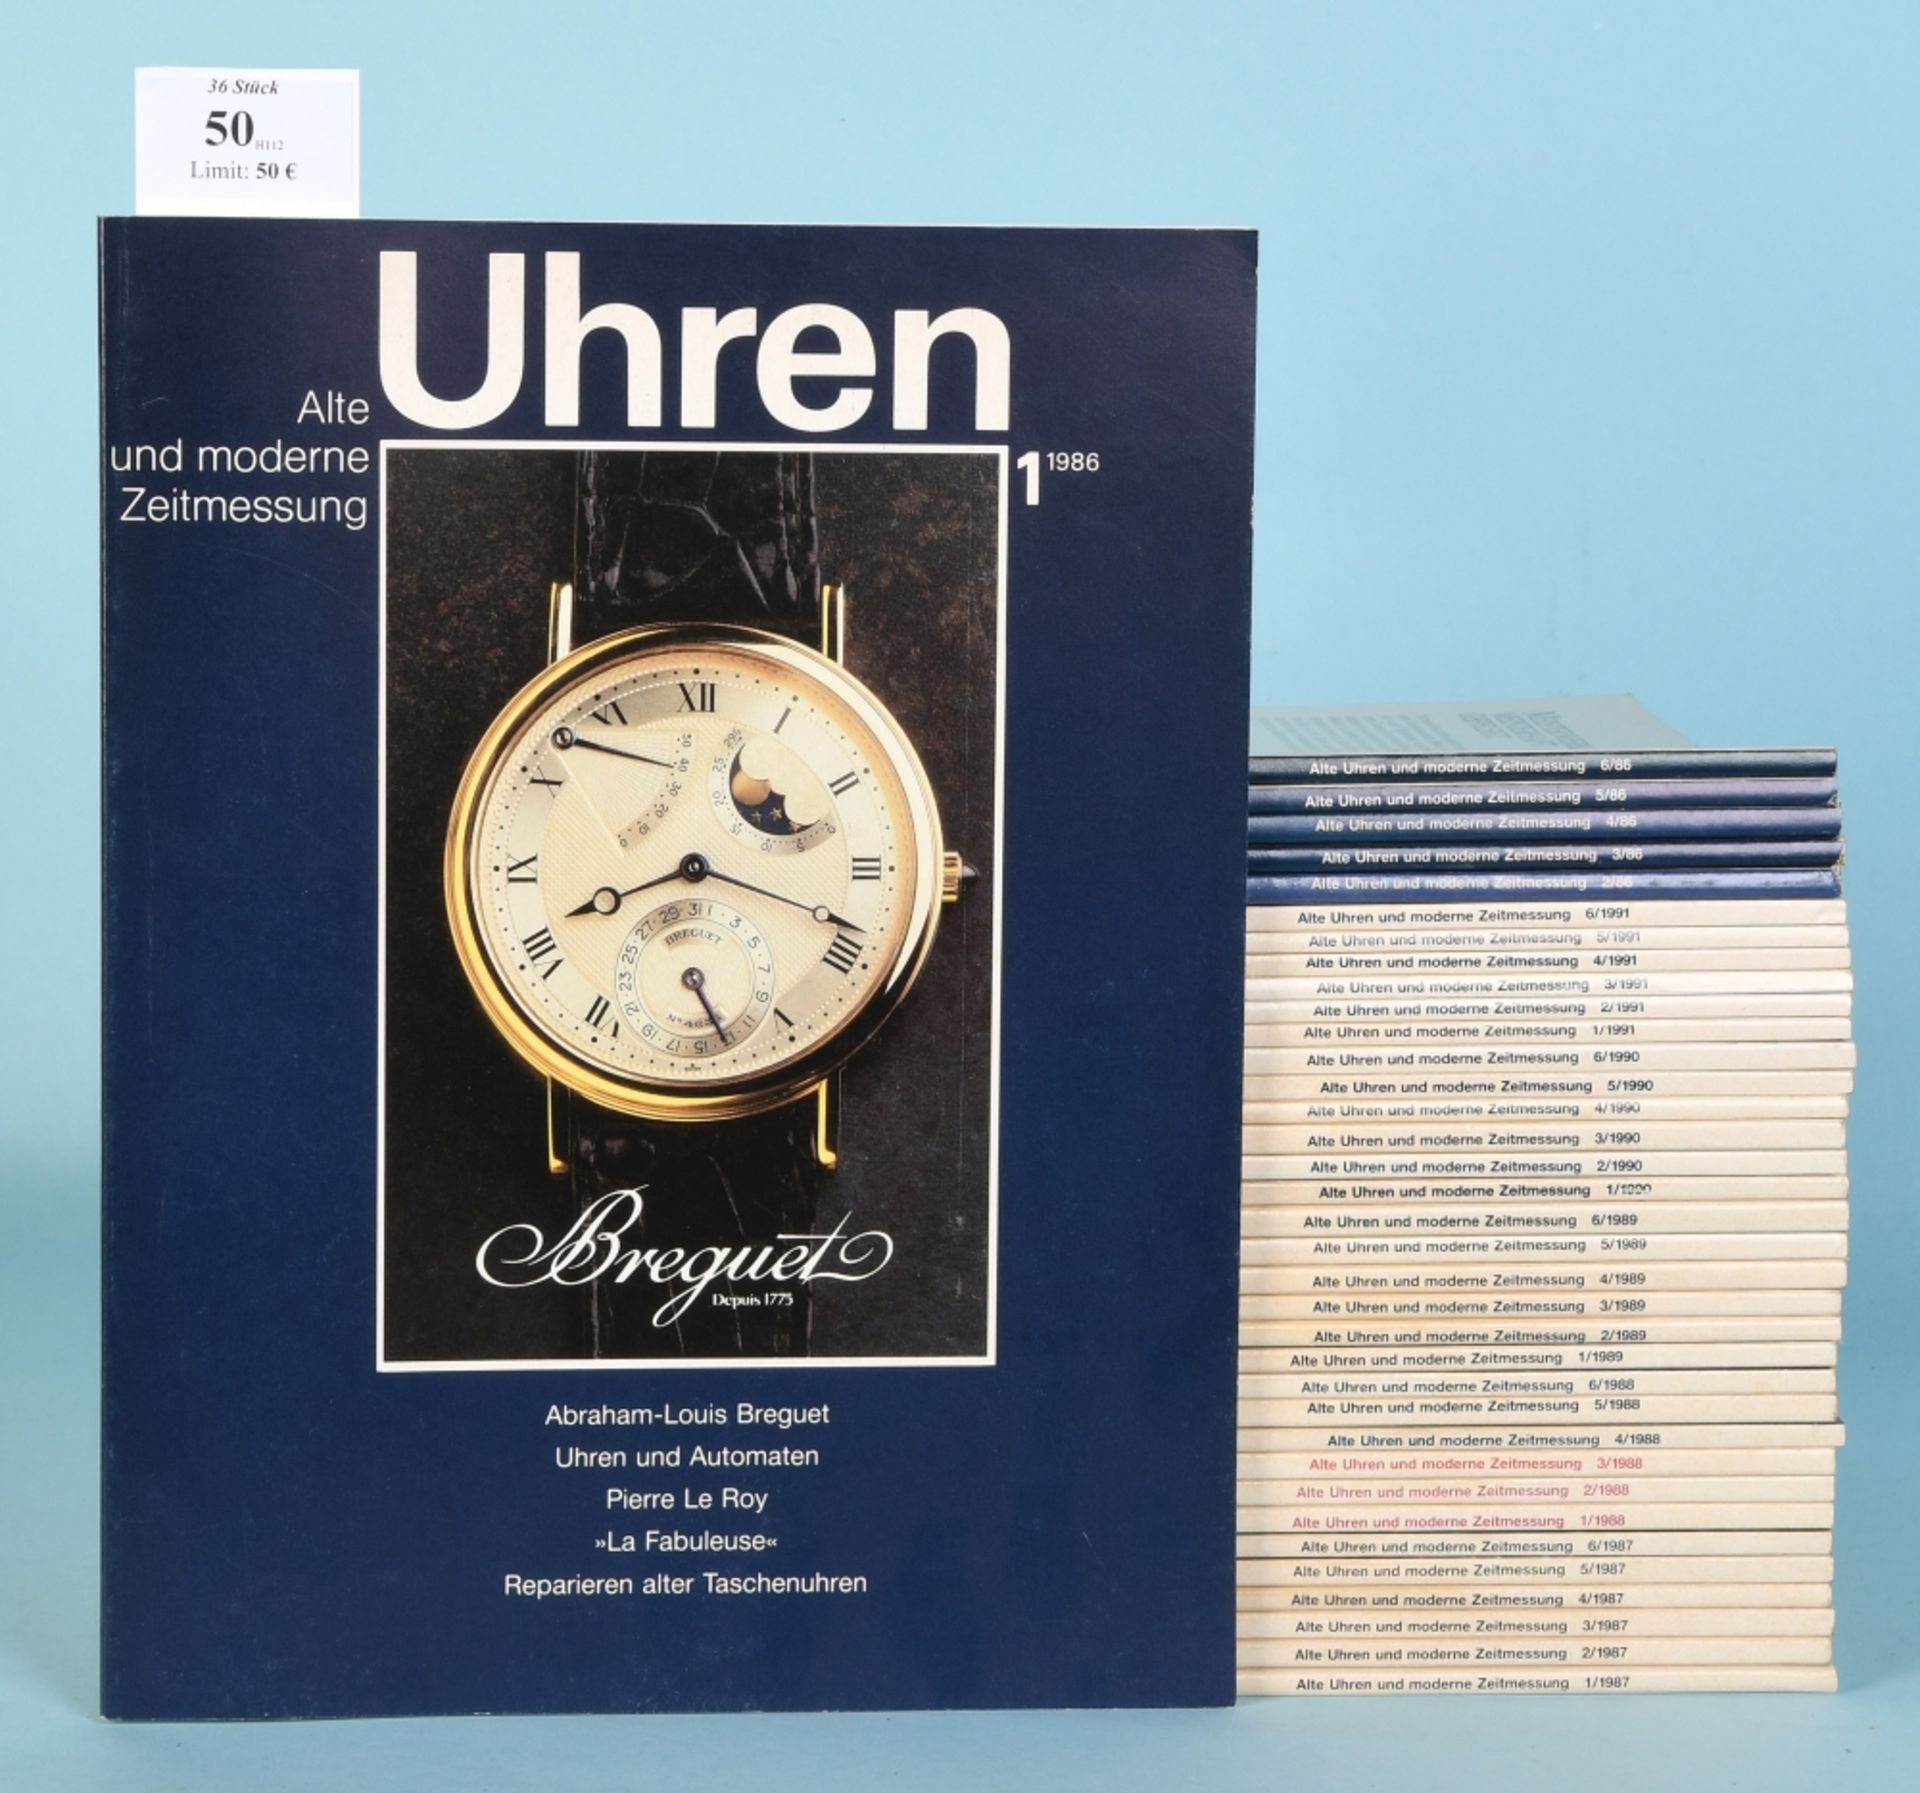 Magazine, 36 Stück "Uhren - Alte und moderne Zeitmessung"